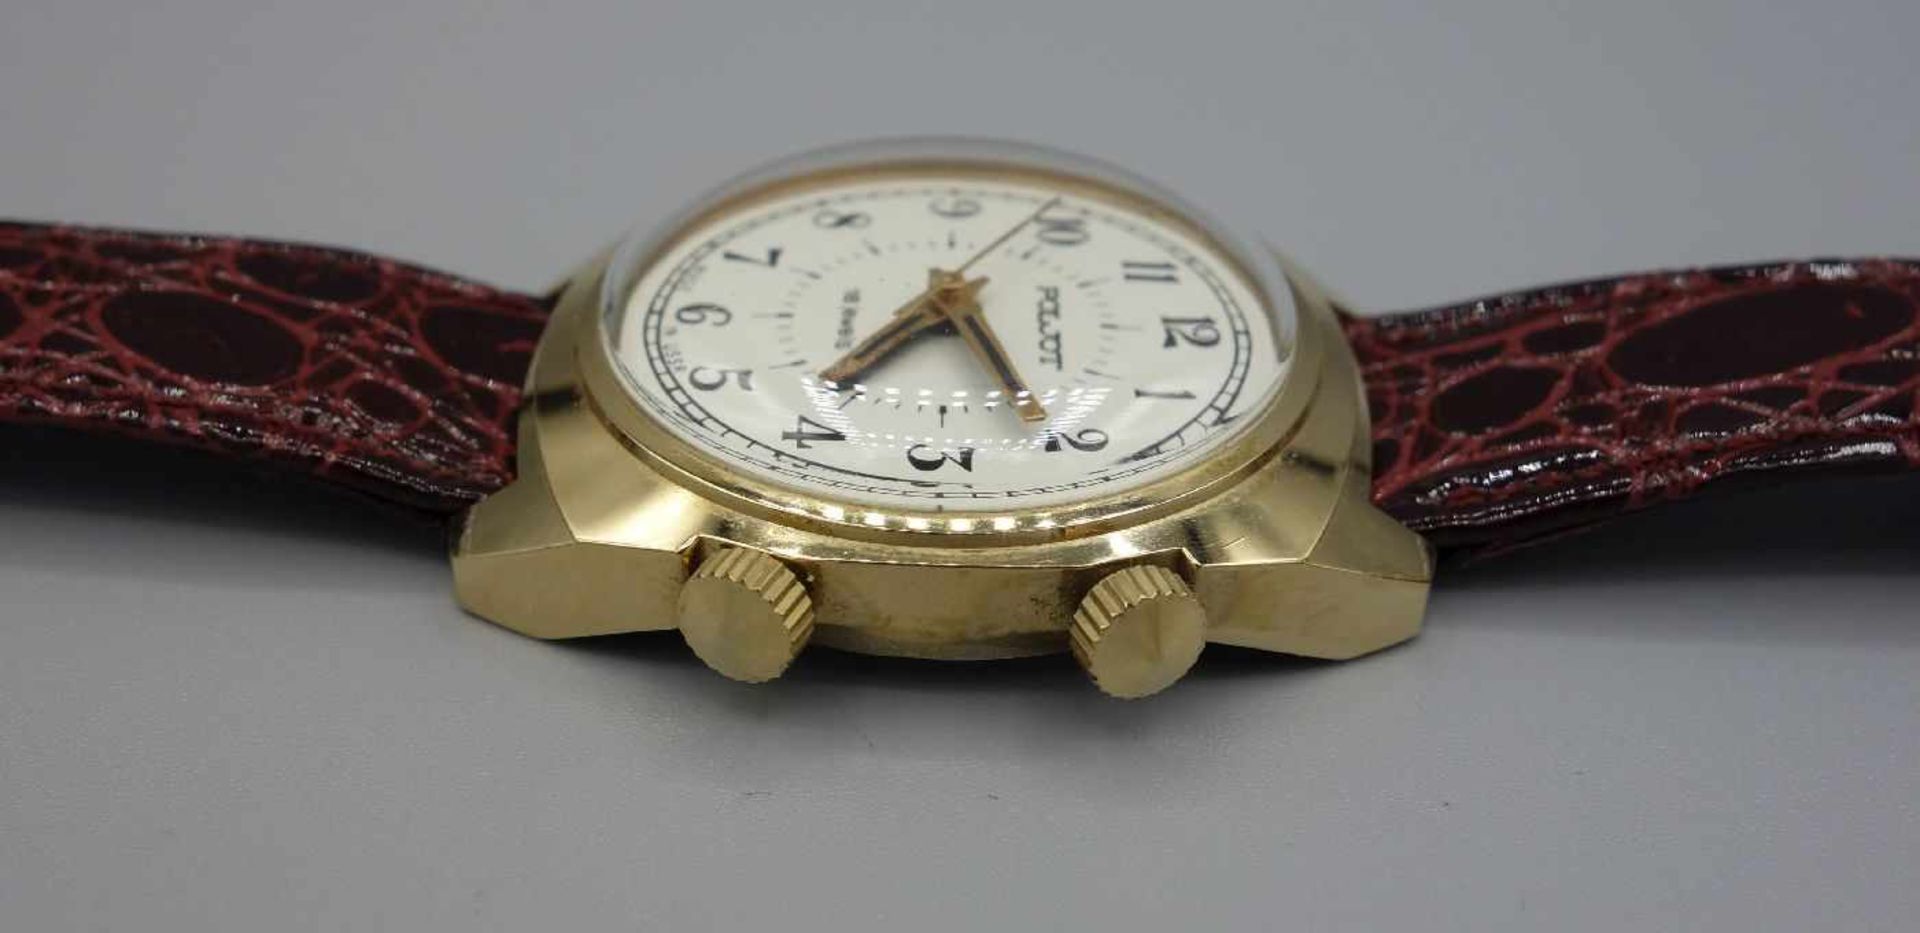 ZWEI ARMBANDUHREN MIT WECKFUNKTION / wristwatches, Russland, Manufaktur Poljot. Handaufzug. 1) - Image 6 of 8